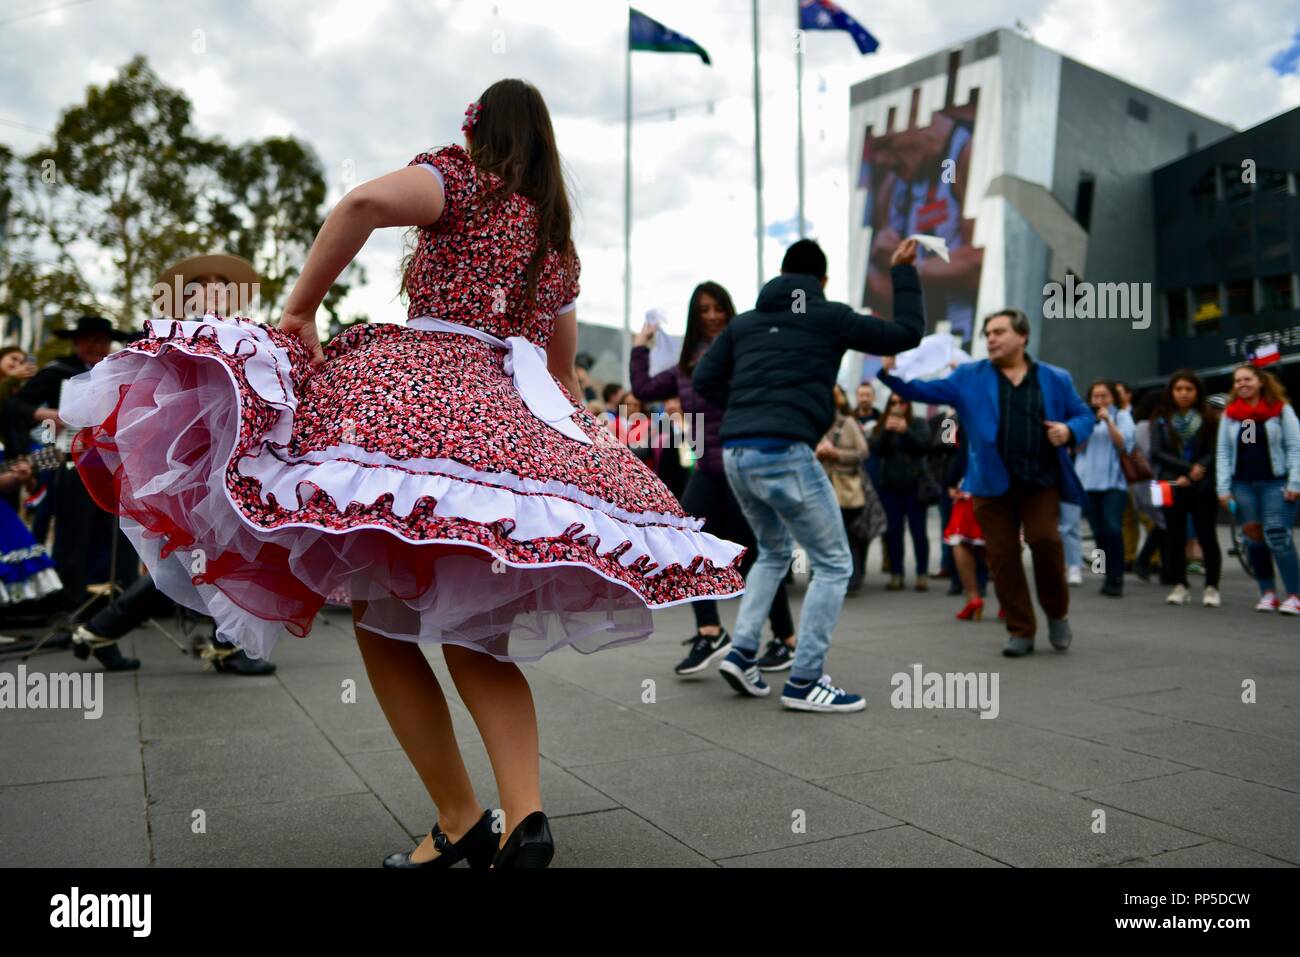 Fiestas Patrias, der Native Land Urlaub, den chilenischen Nationalen Tag Feier am Federation Square in Melbourne, VIC, Australien, 18. September 2018 Stockfoto